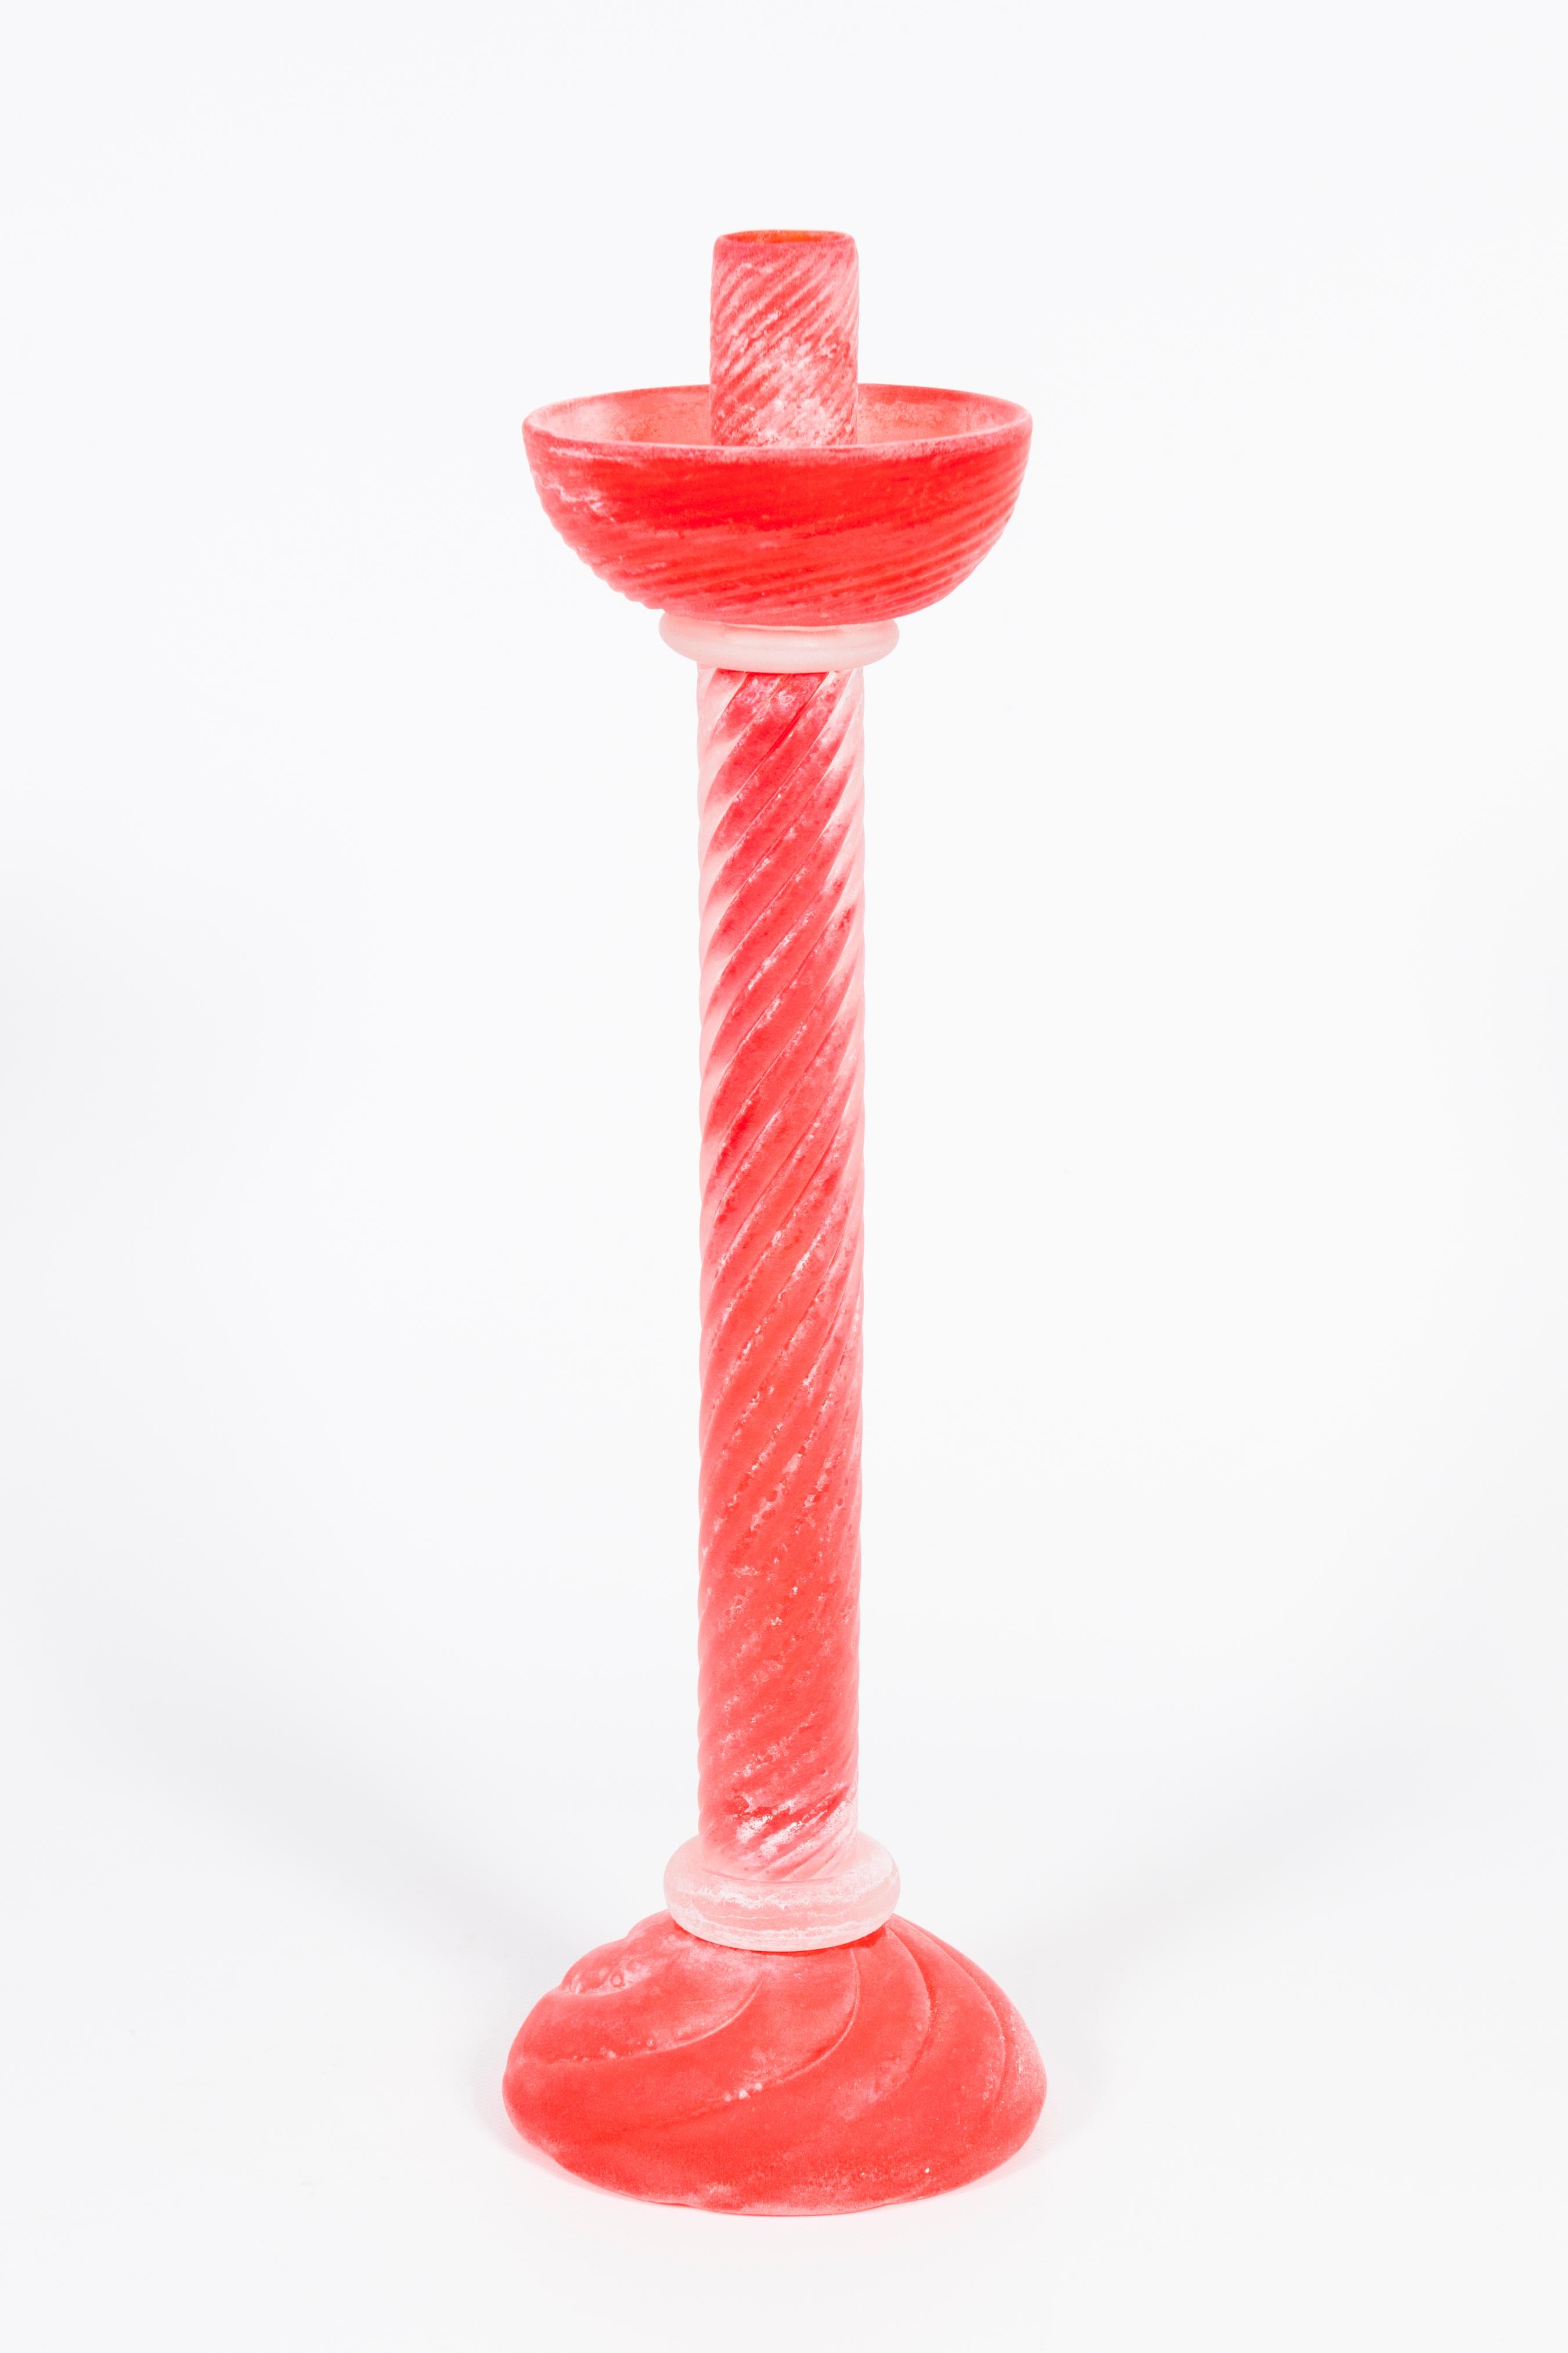 Italienischer Murano-Glas-Leuchter Scavo aus Venedig, 1980, signiert Cenedese.
Dieser wunderbare Kerzenhalter wurde von Cenedese, einem der bekanntesten Glaskünstler der venezianischen Insel Murano, hergestellt. Am Sockel trägt es seine